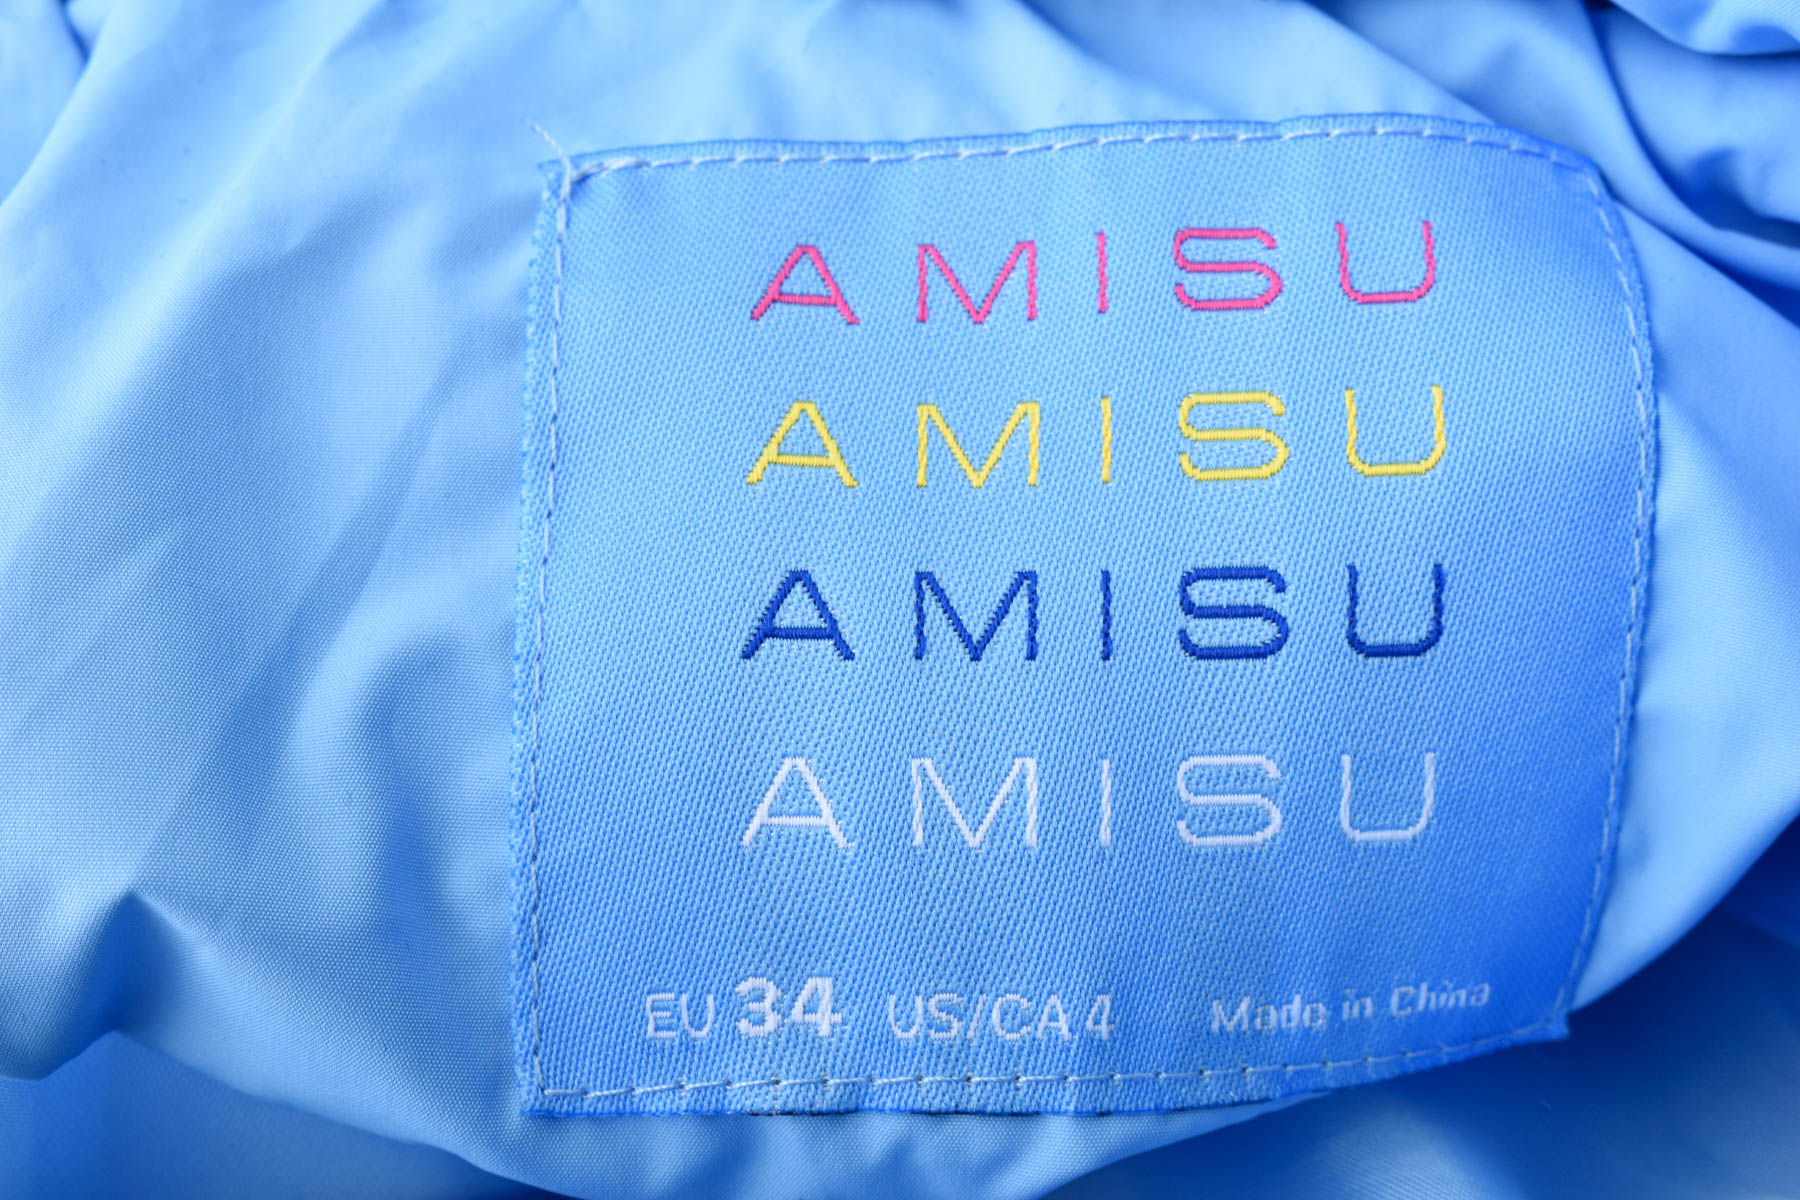 Female jacket - AMISU - 2